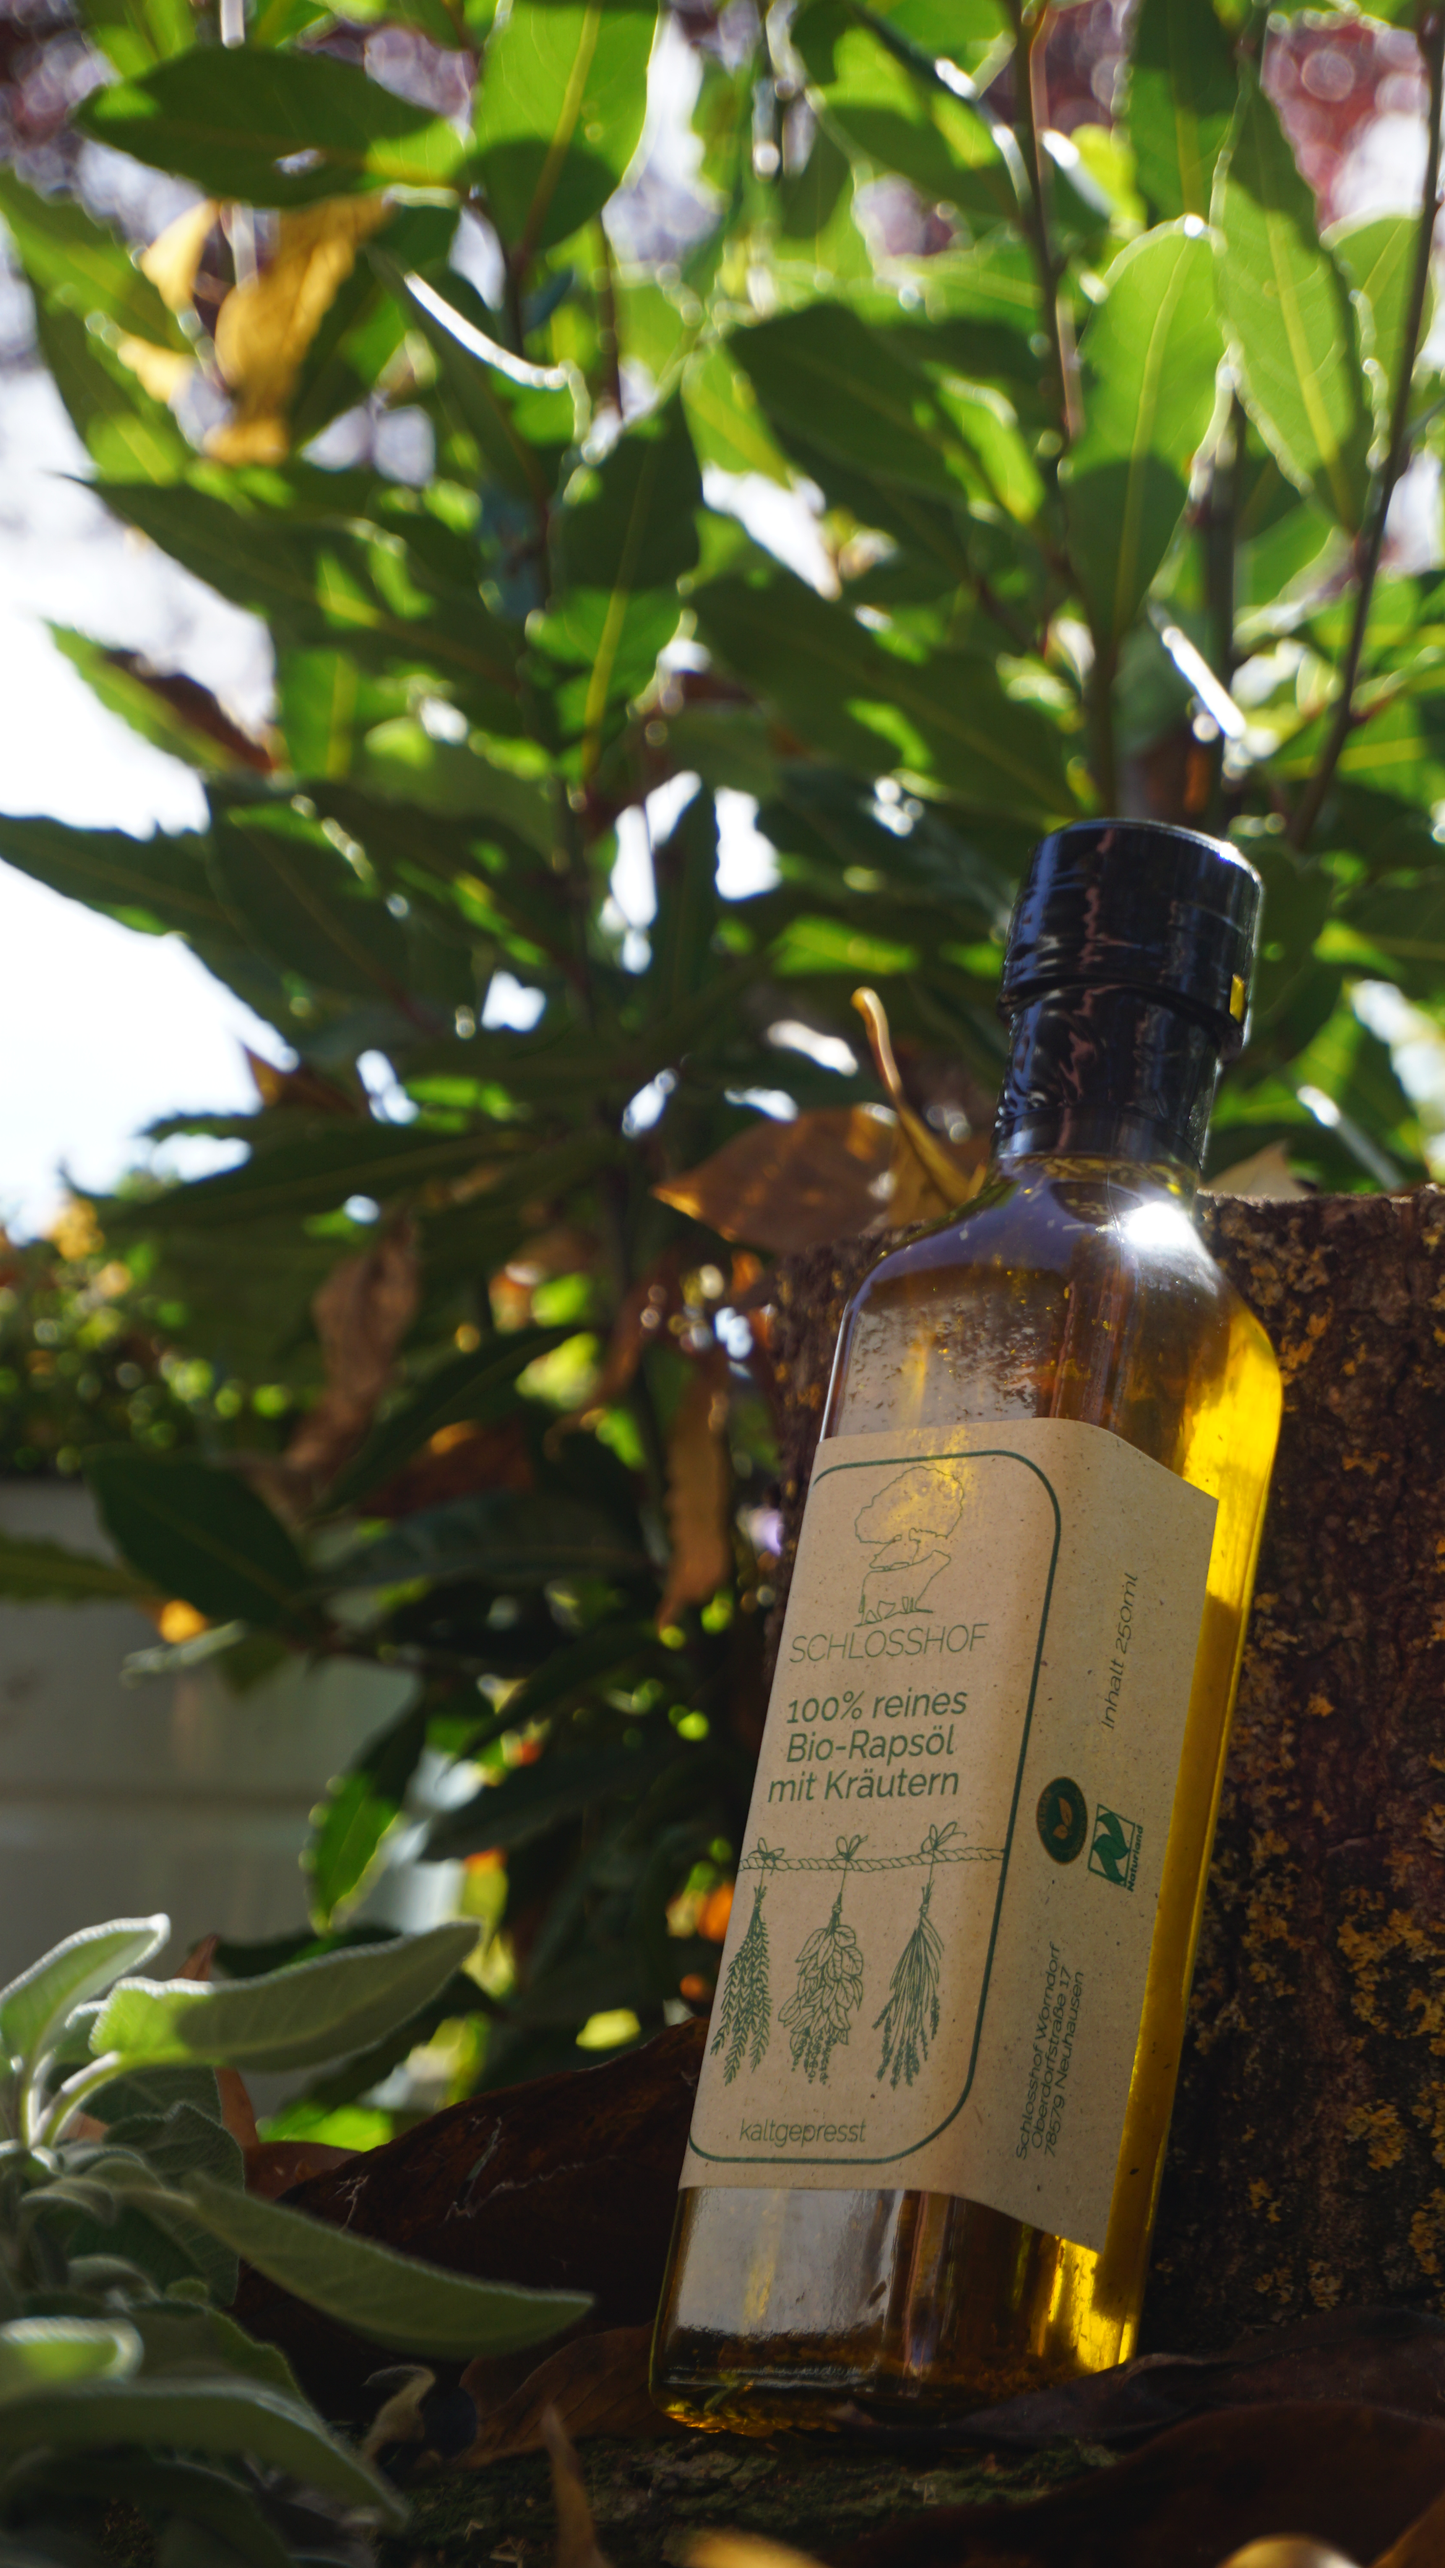 Reines Bio-Rapsöl verfeinert mit Kräutern. Handgefertigt, nachhaltig, vegan, biologisch angebaut. Direkt vom Bauernhof